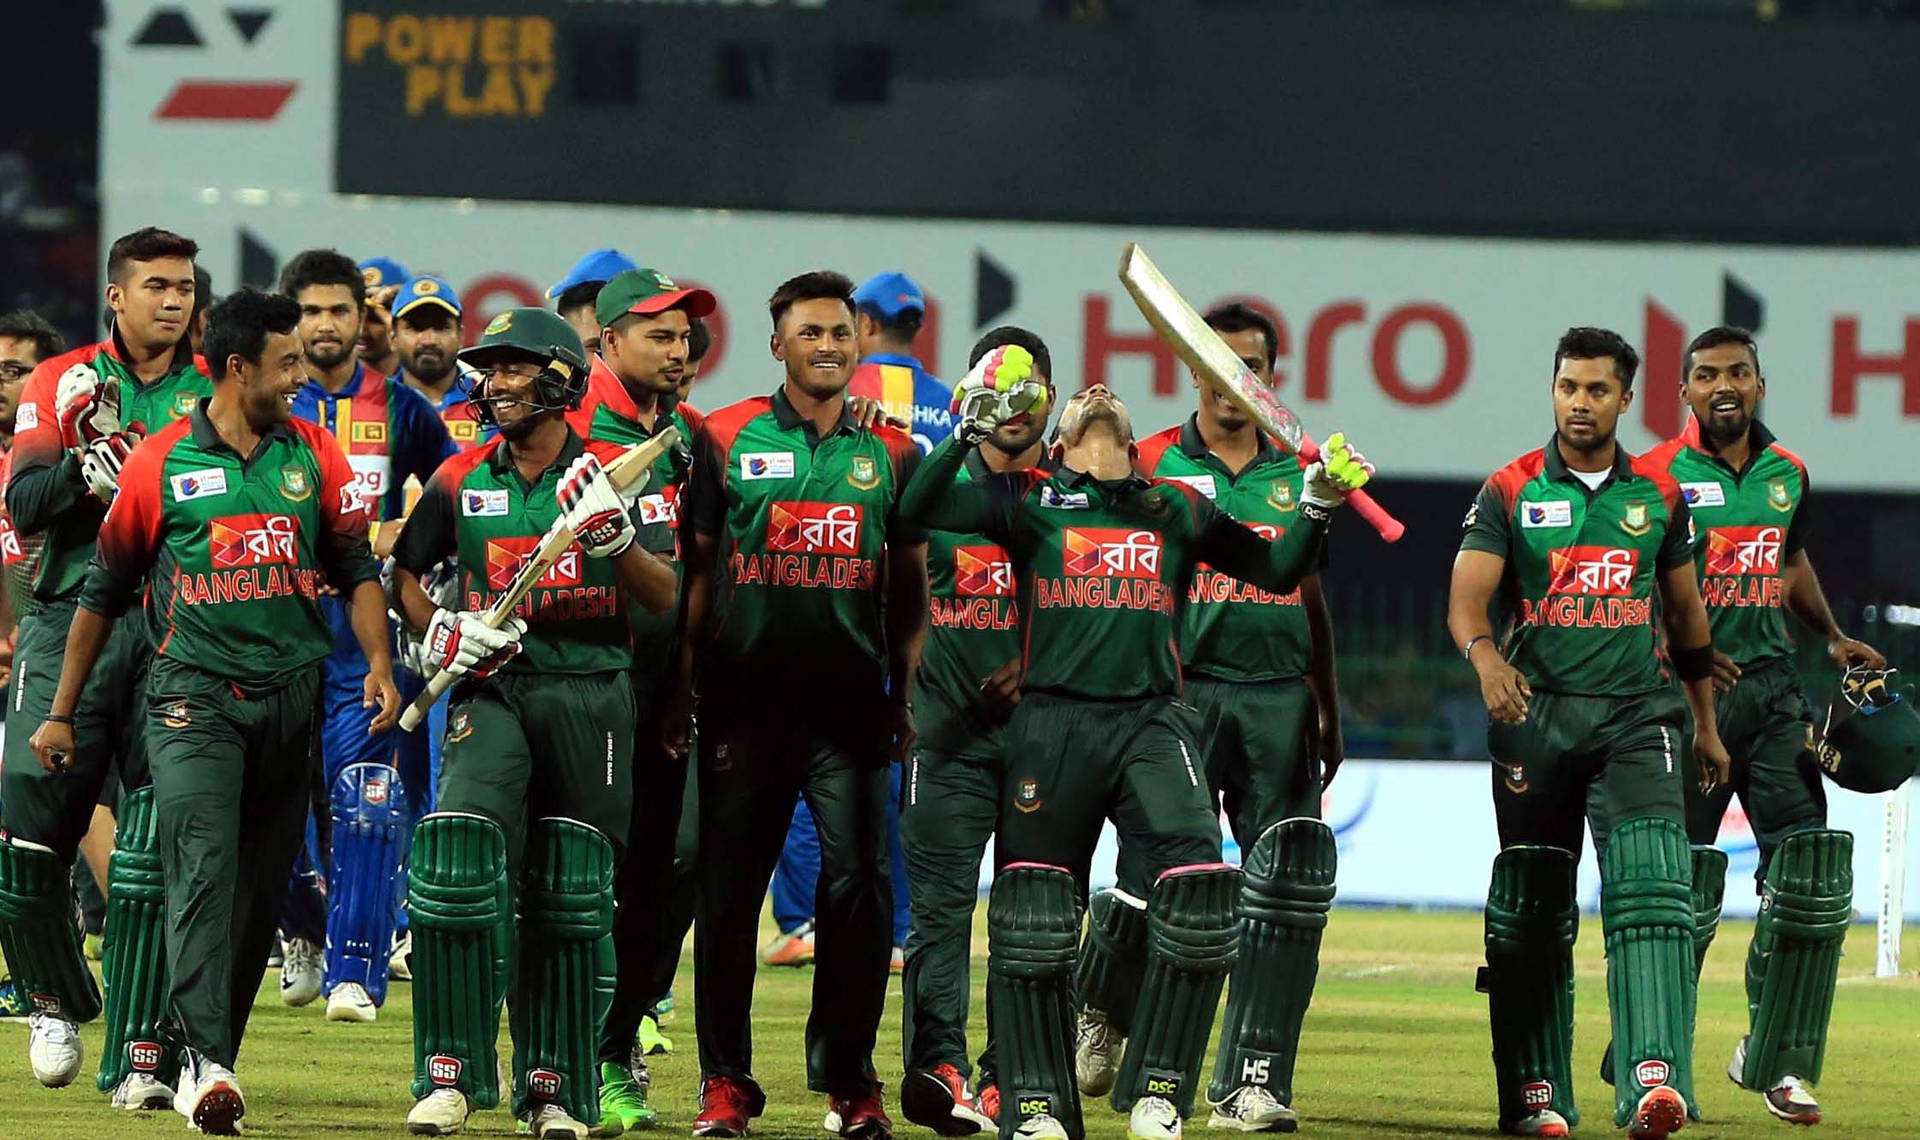 Bangladeschischescricket-team Nach Dem Spiel Wallpaper